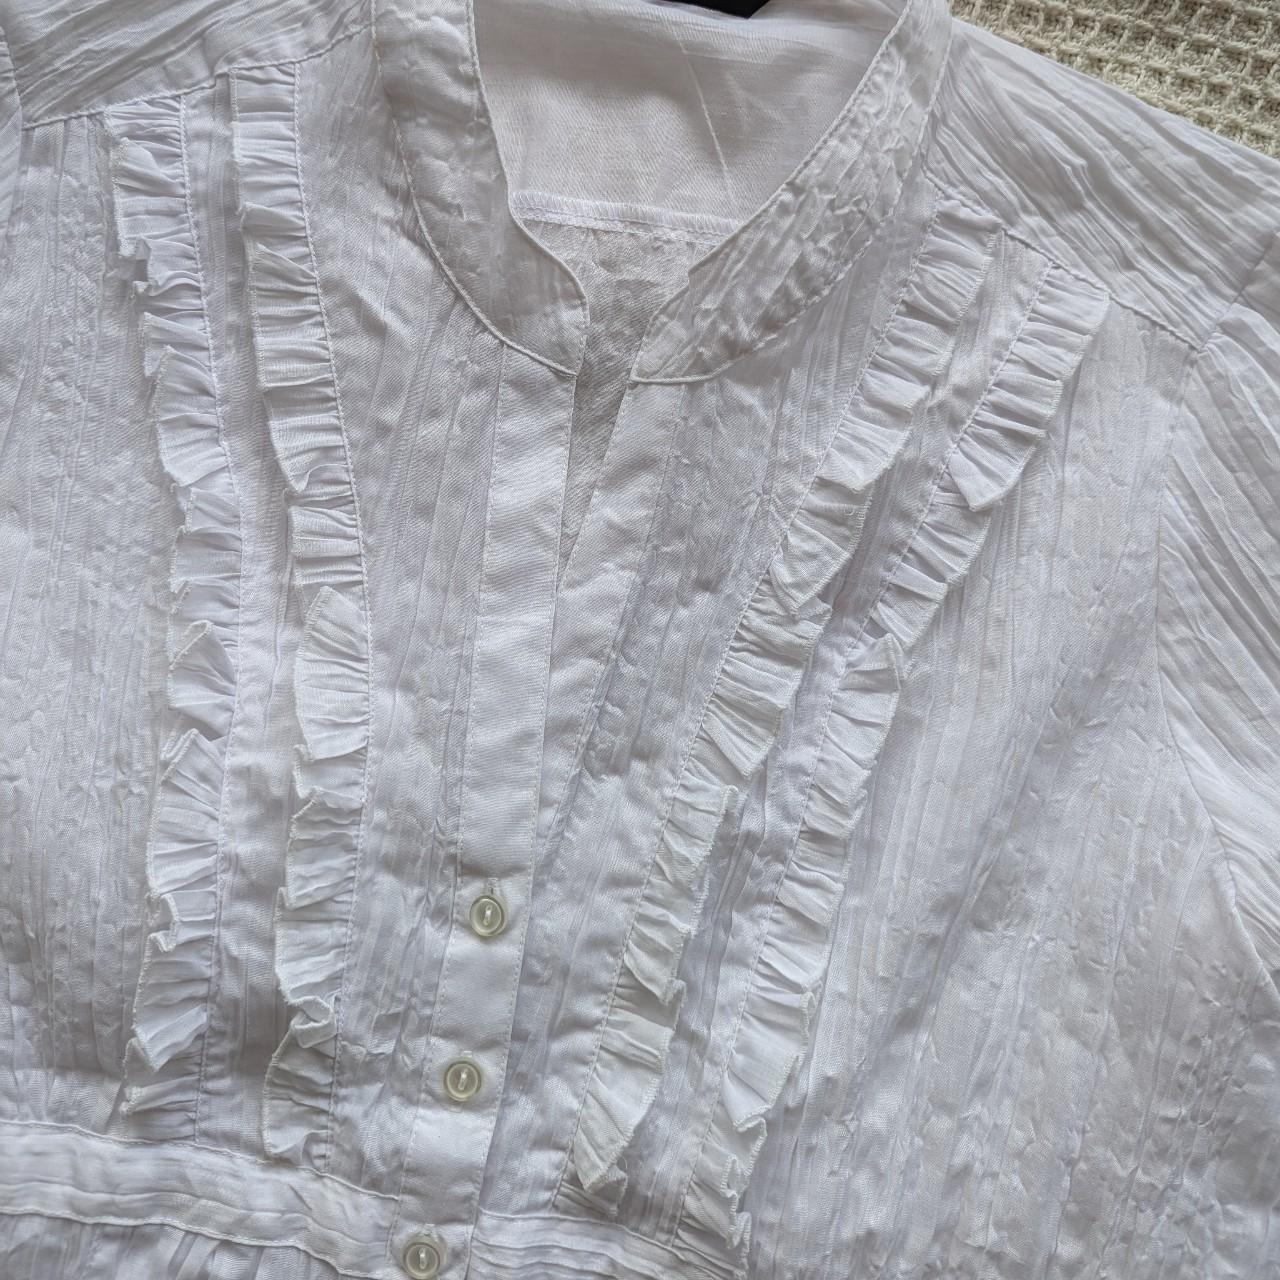 Crinkle ruffle white shirt, size 18 Vintage sizing,... - Depop